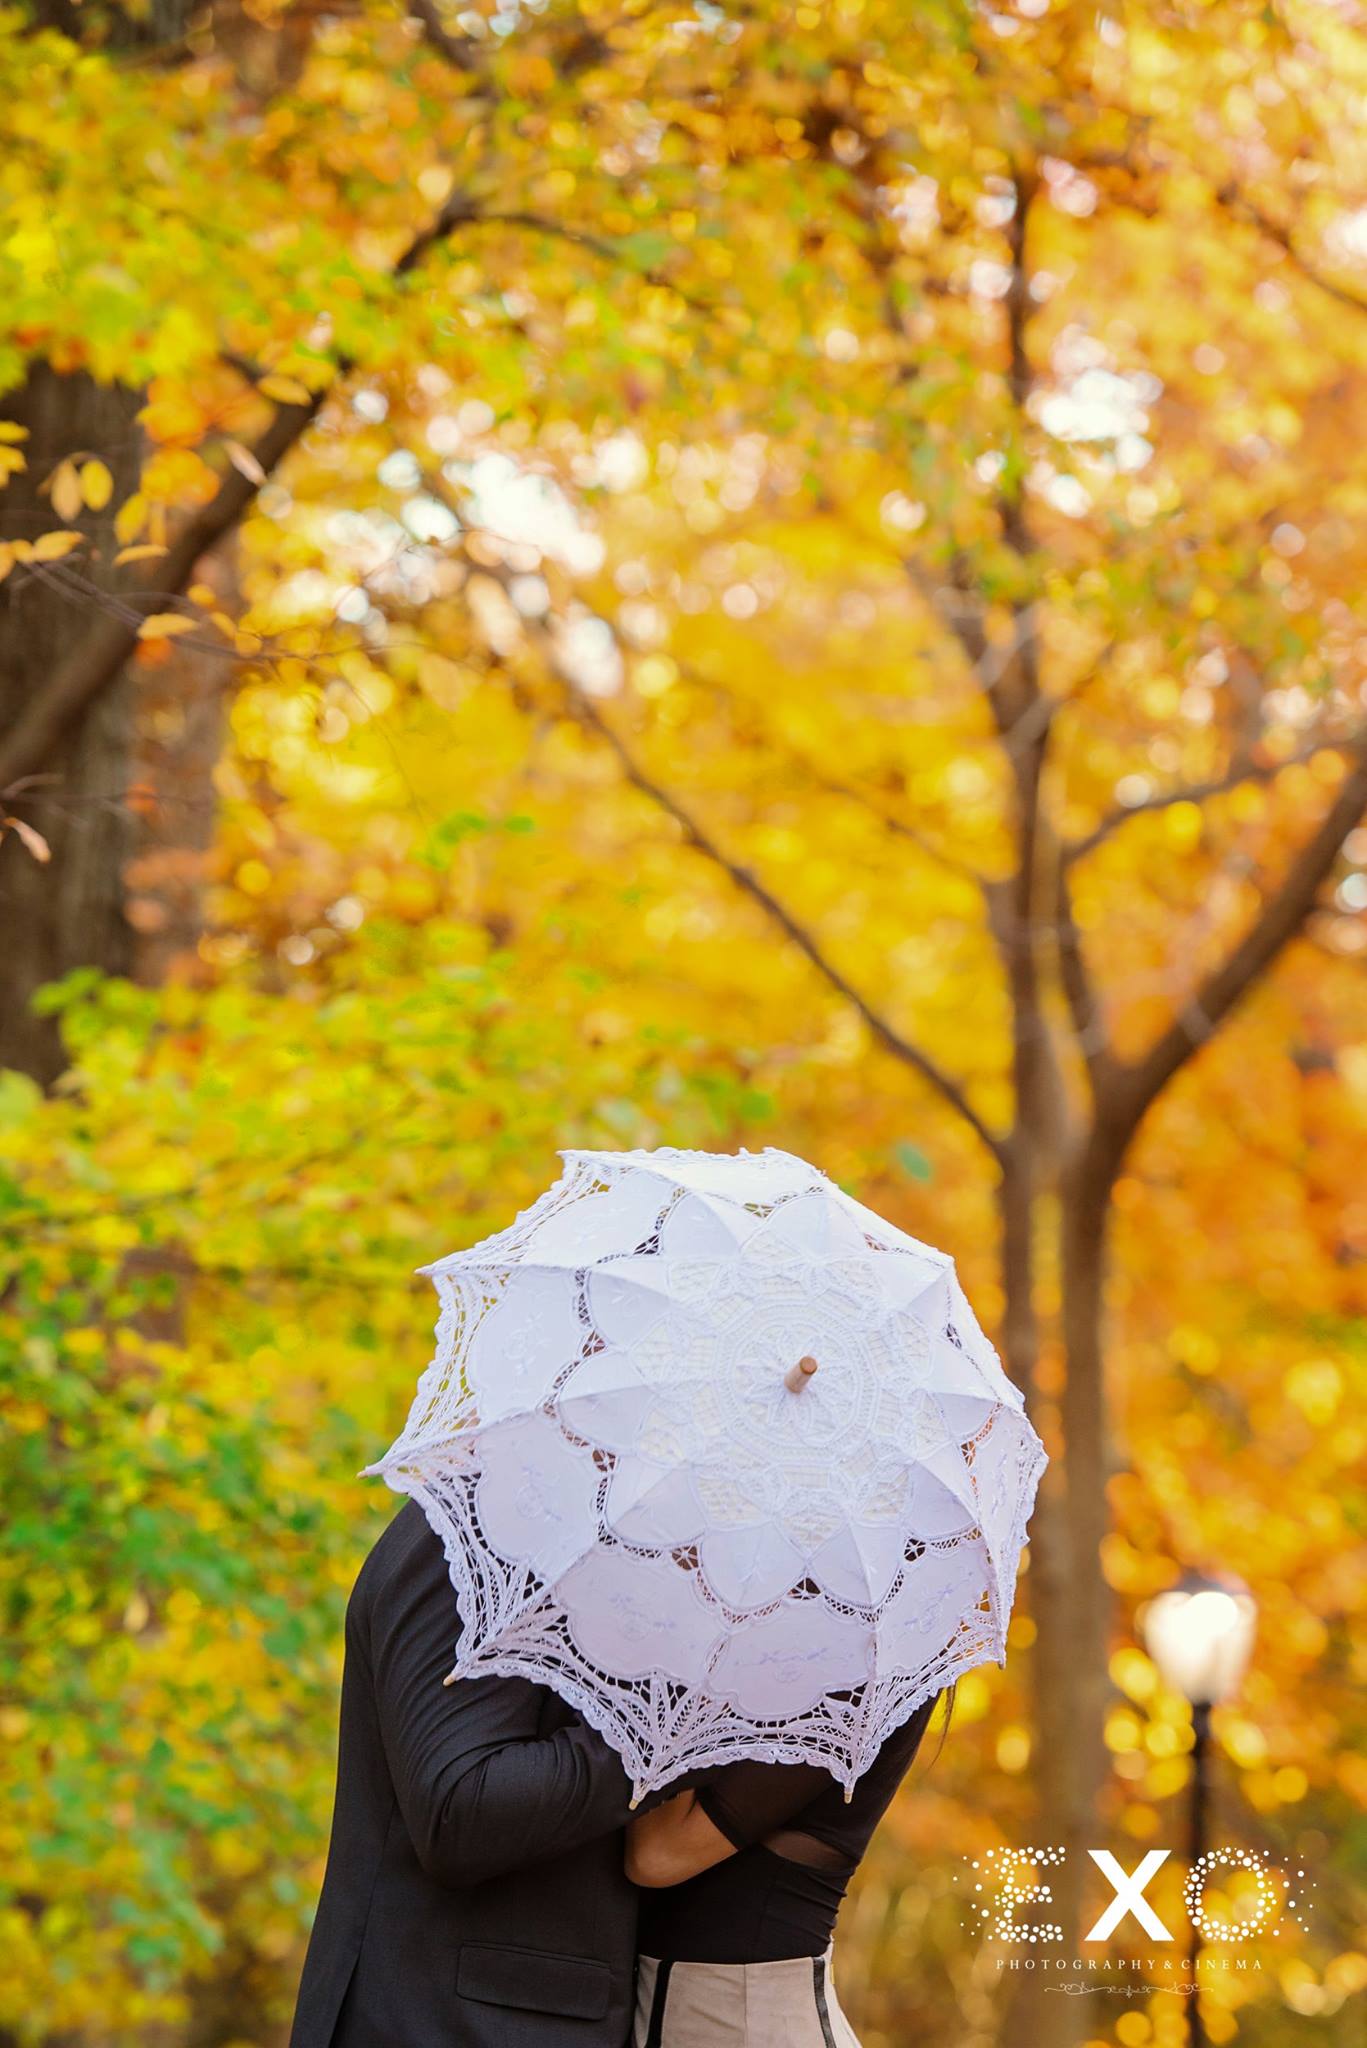 hiding behind umbrella in central park